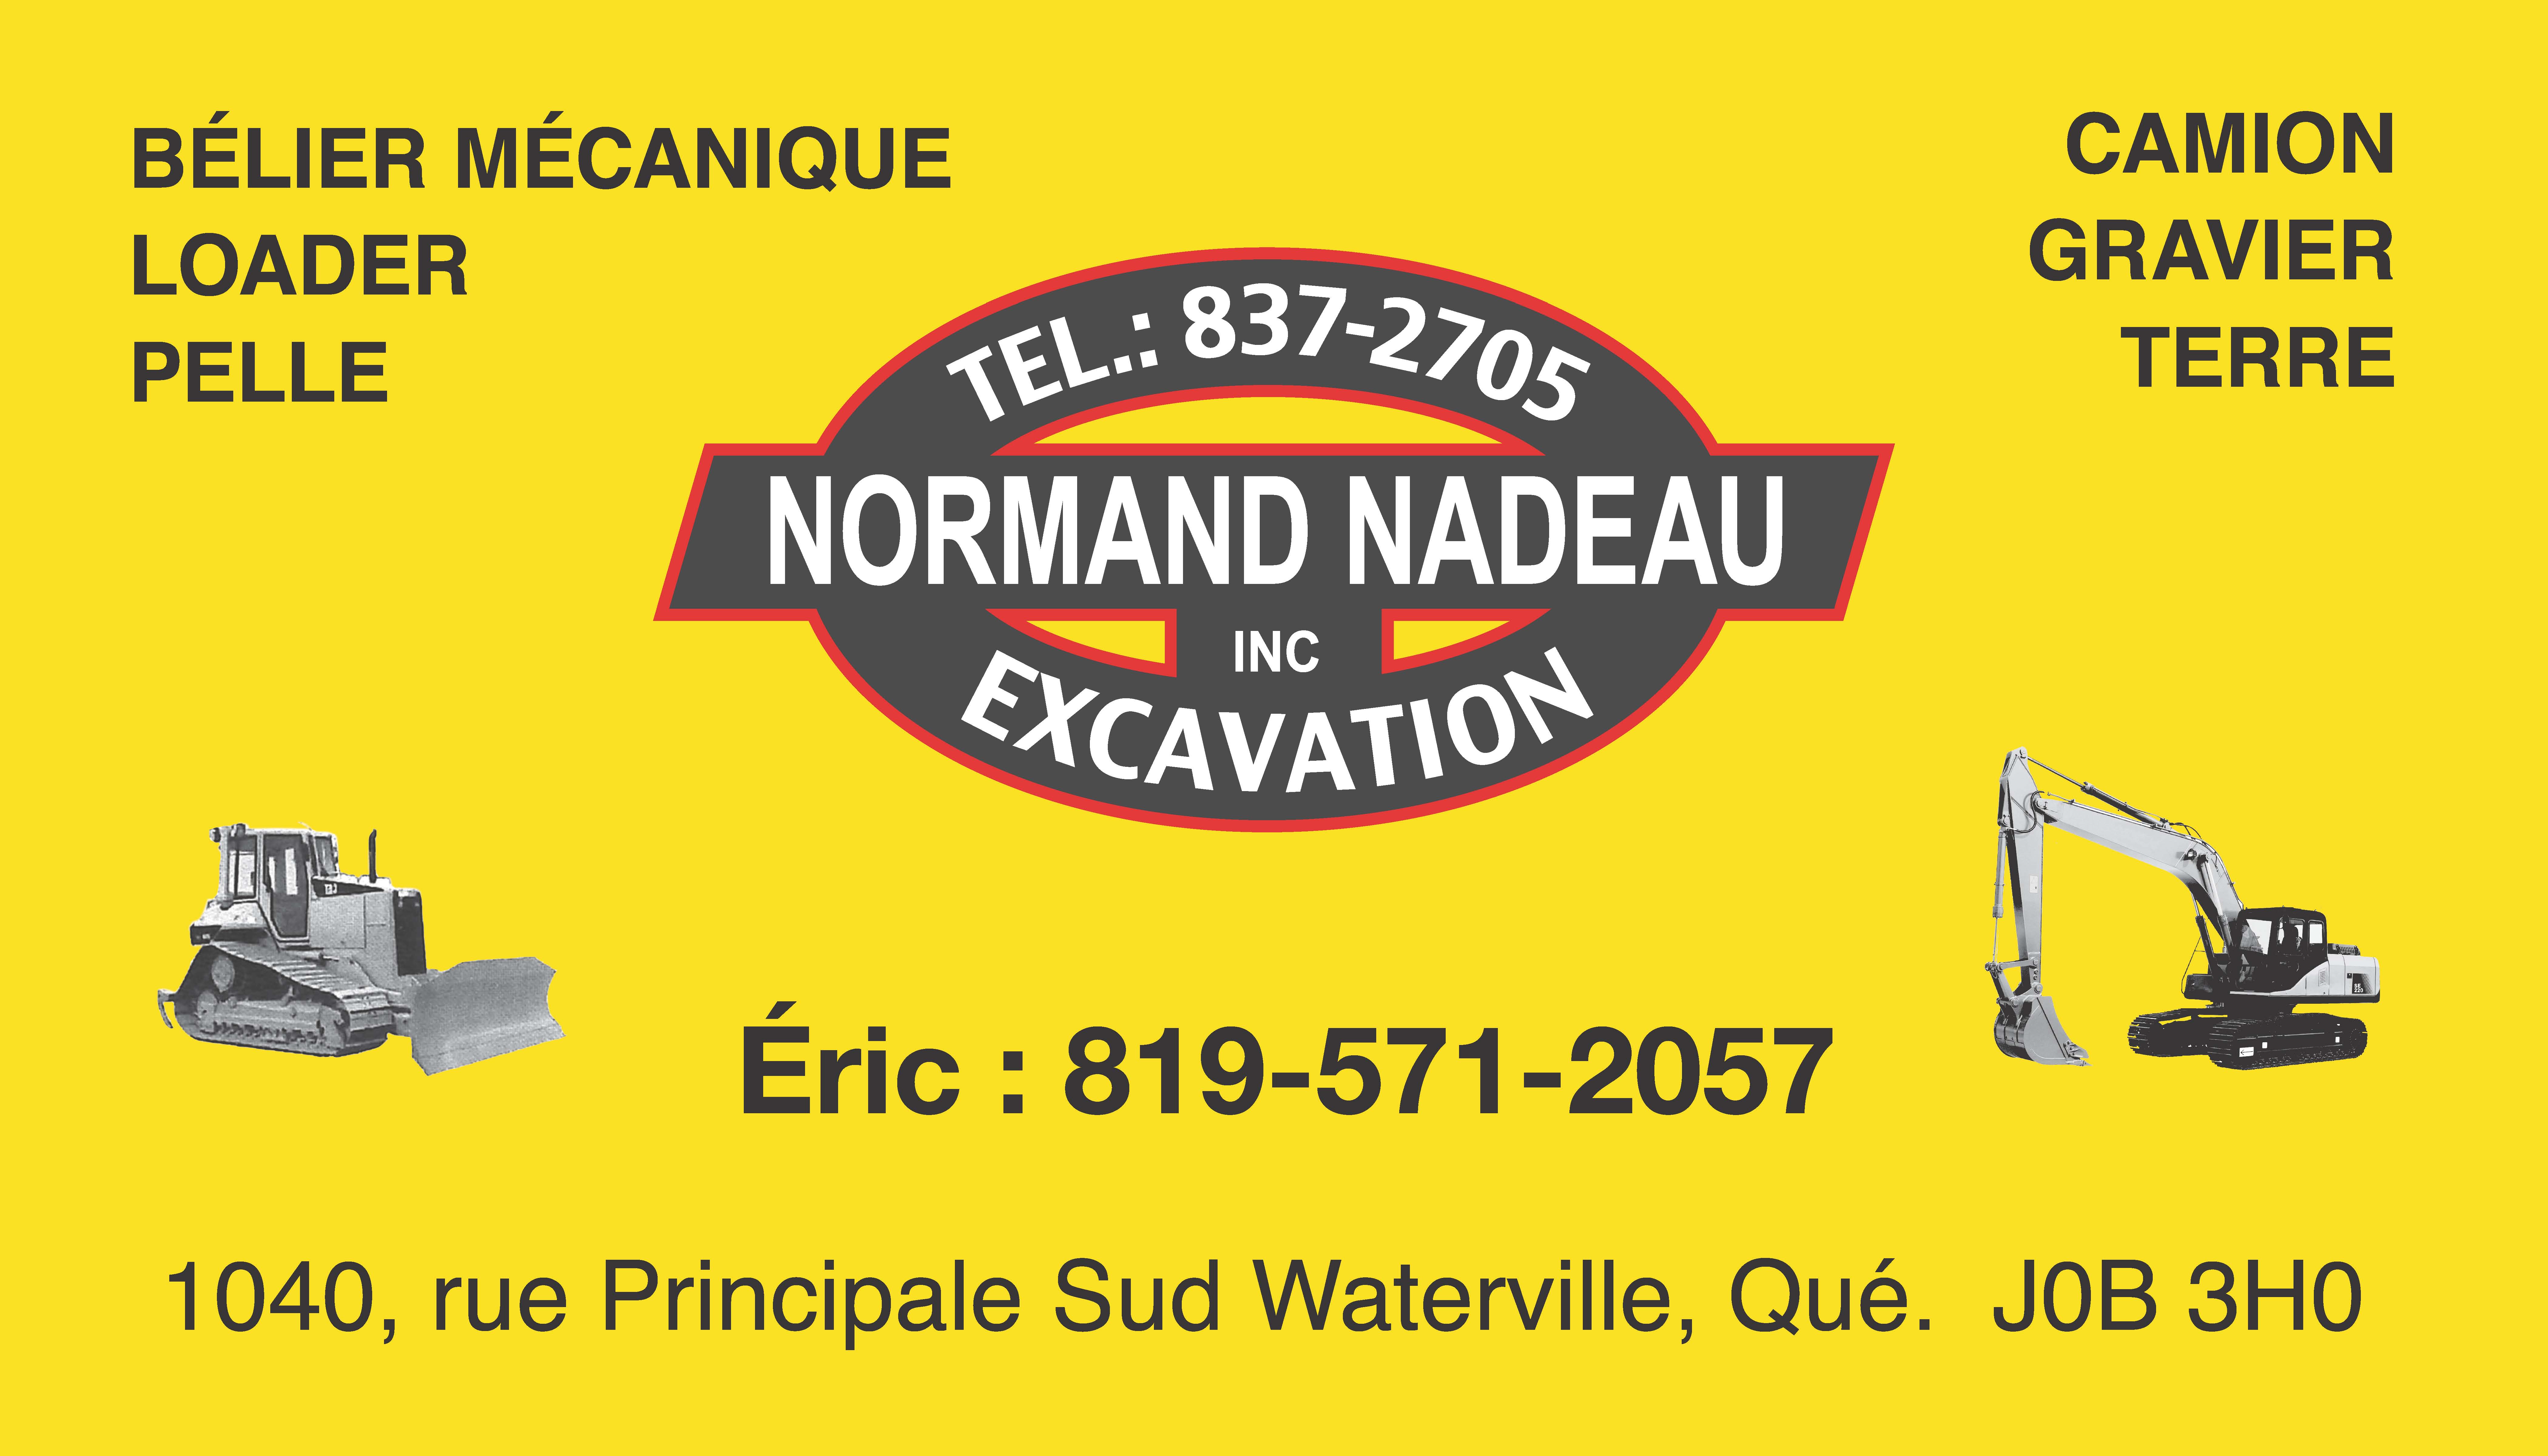 Des partenaires de confiance telle que : Normand Nadeau Excavation pourrons vous aider lors de votre achat avec notre agence immobilière à Sherbrooke